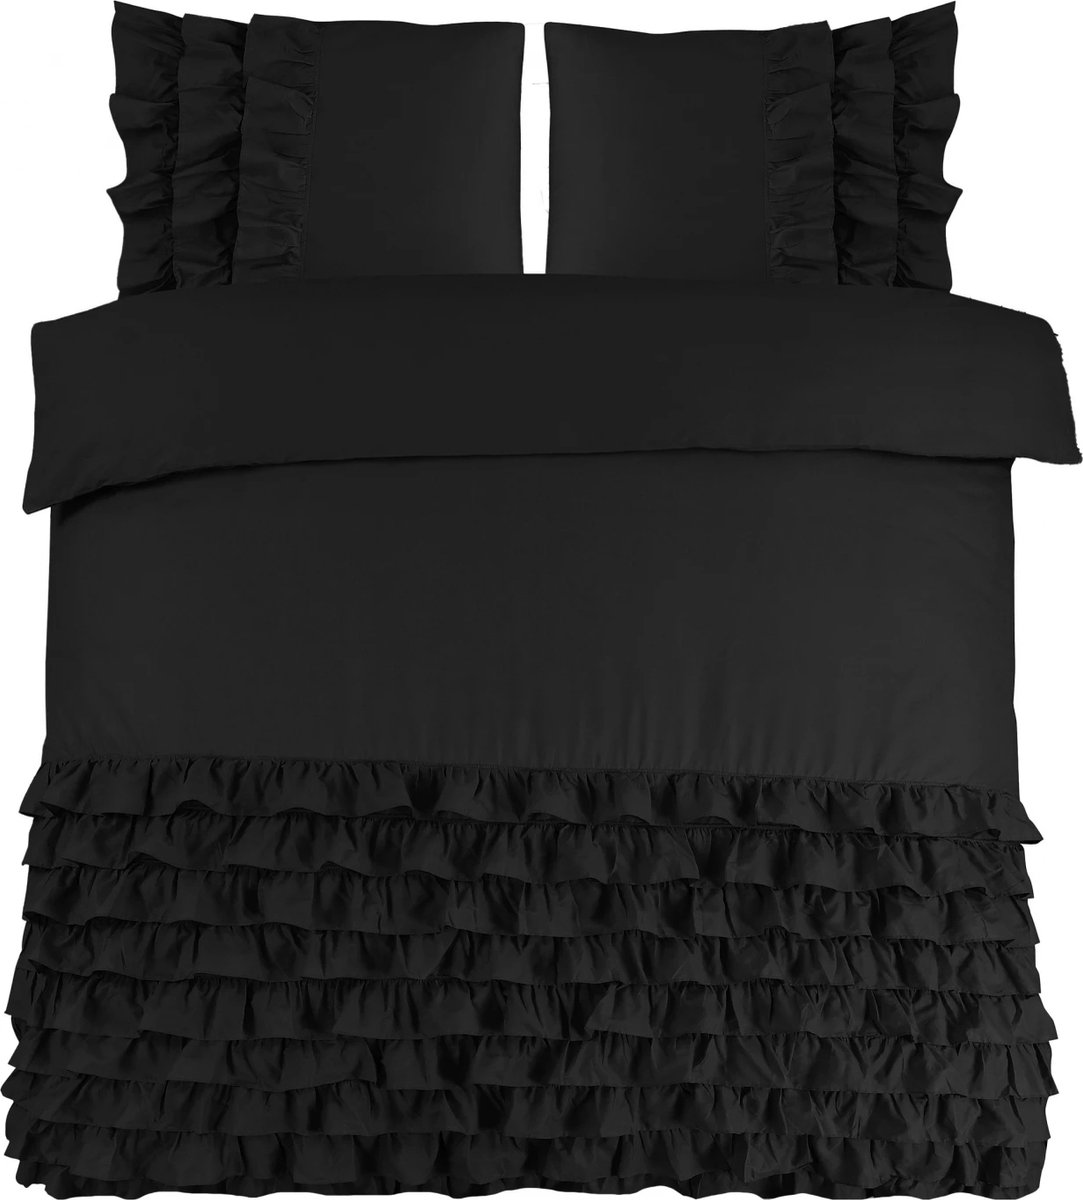 Luxe percaline katoen geweven dekbedovertrek Rosalinde zwart - 200x200/220 (tweepersoons) - fijne kwaliteit - zacht en ademend - stijlvolle uitstraling - met handige drukknopen